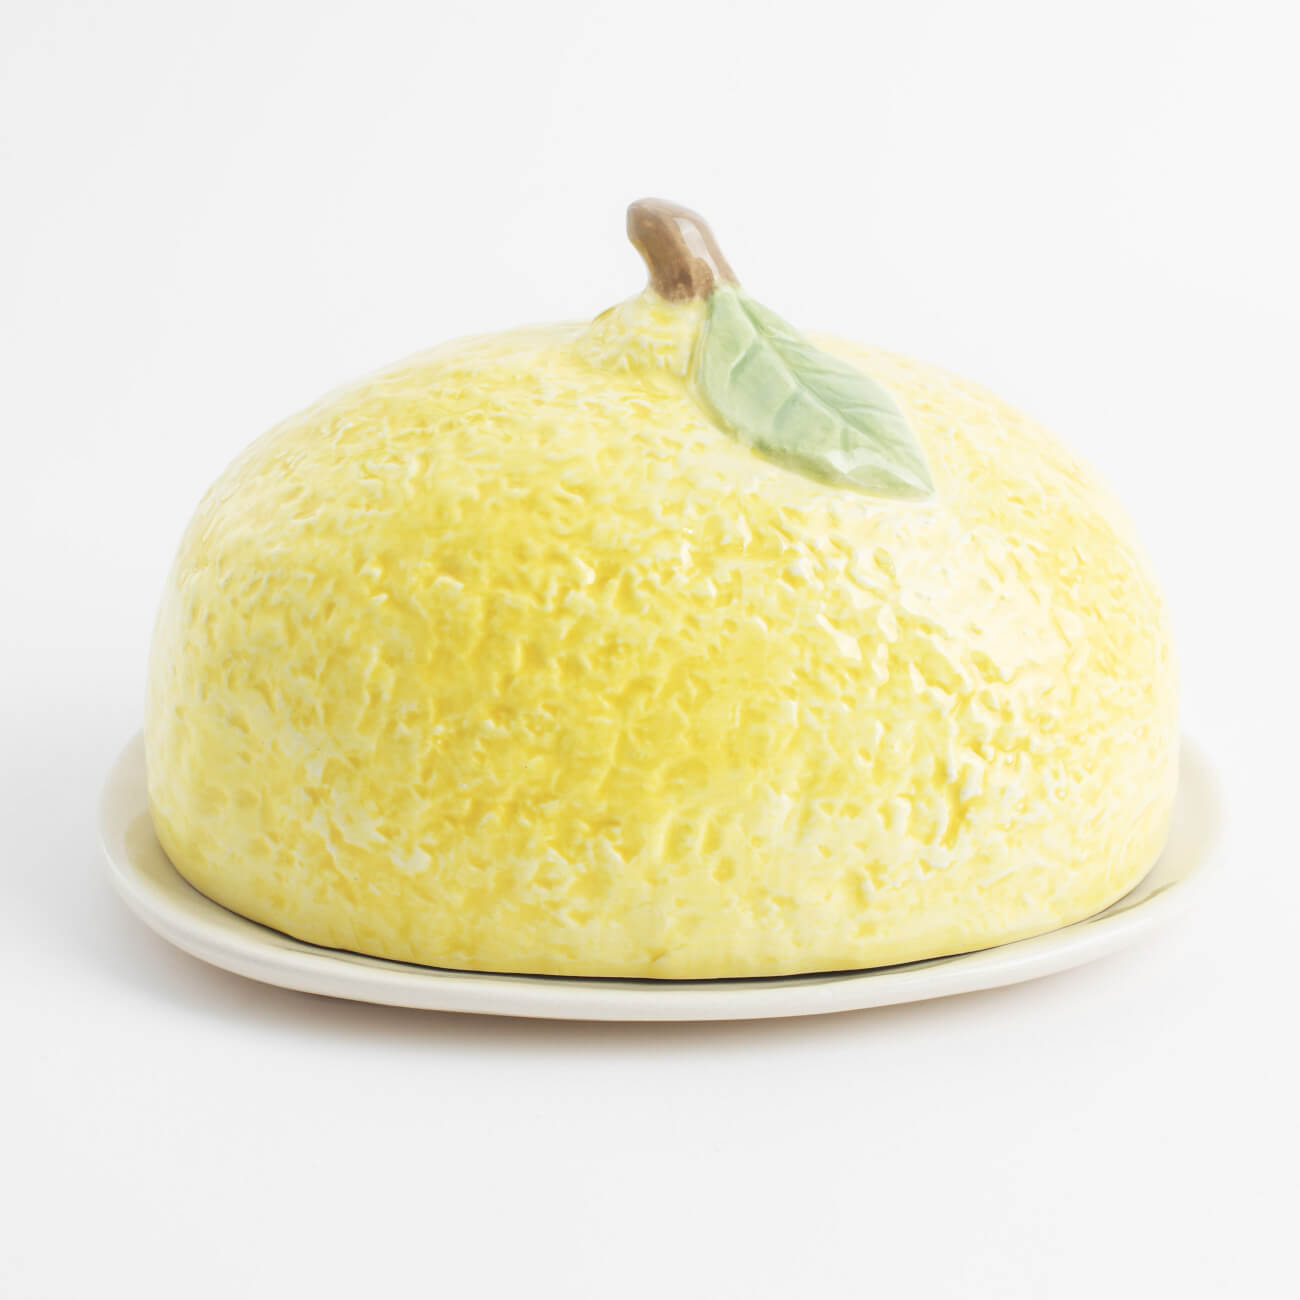 Масленка, 18 см, керамика, овальная, желтая, Лимон, Sicily in bloom масленка